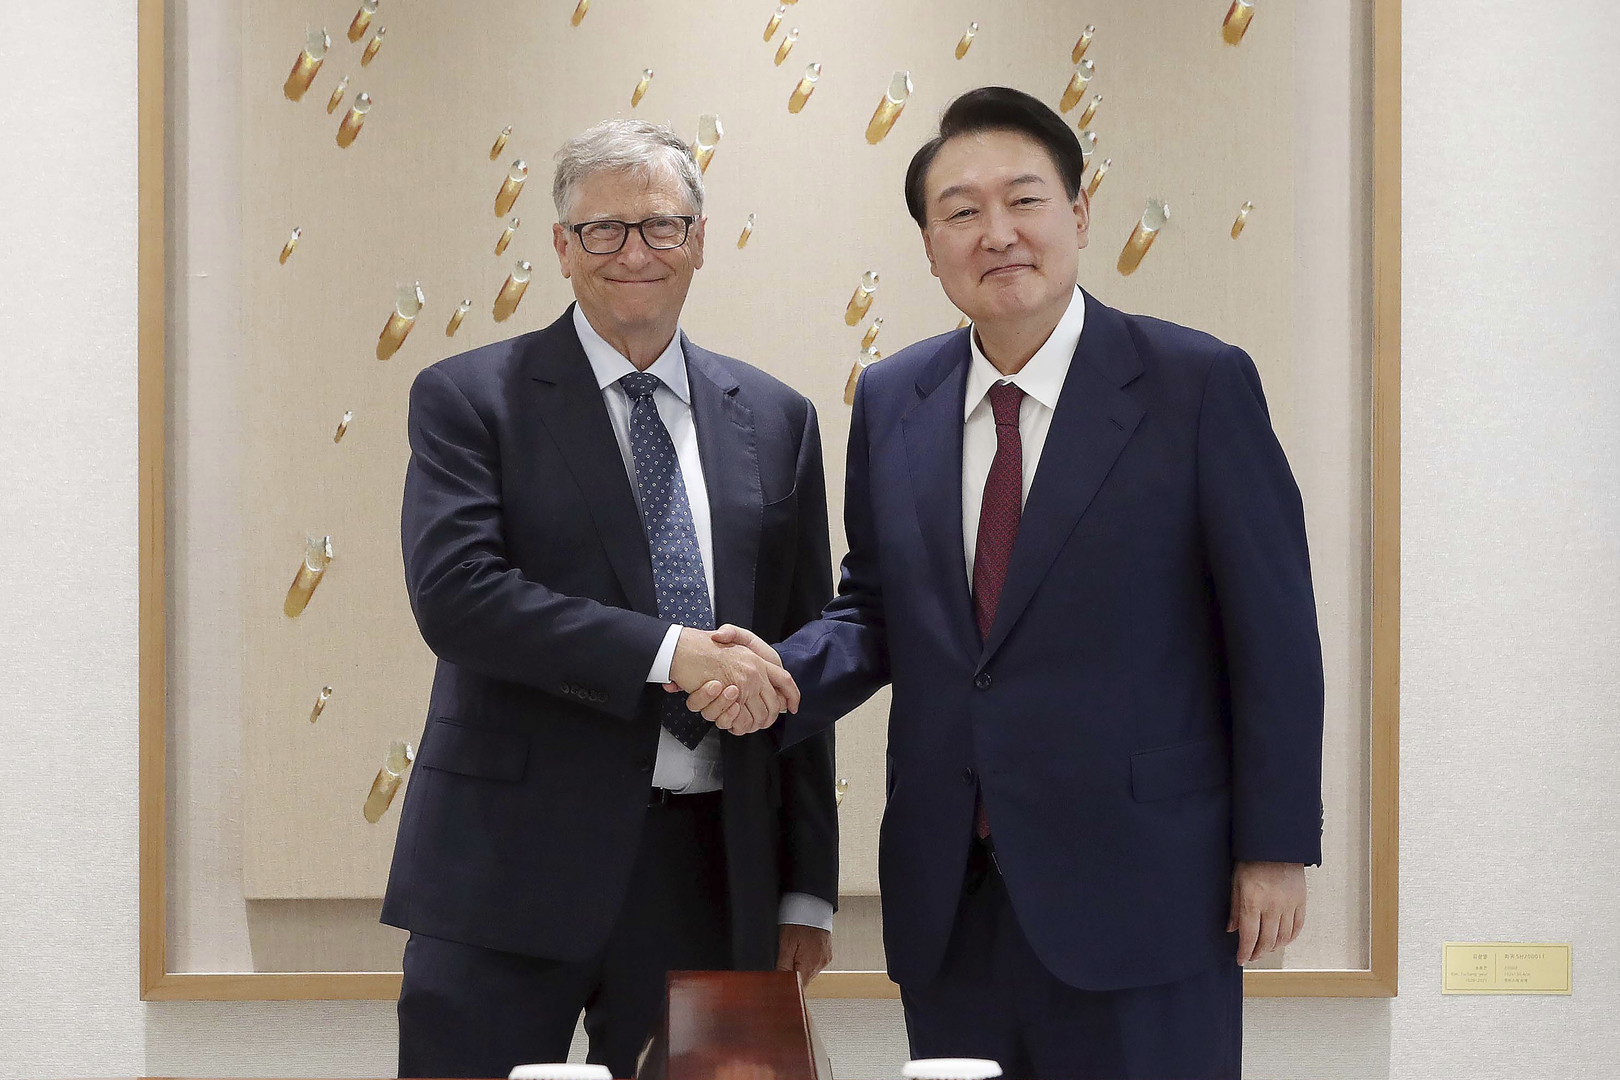 رئيس كوريا الجنوبية يؤكد لبيل غيتس أهمية التعاون مع مؤسسته